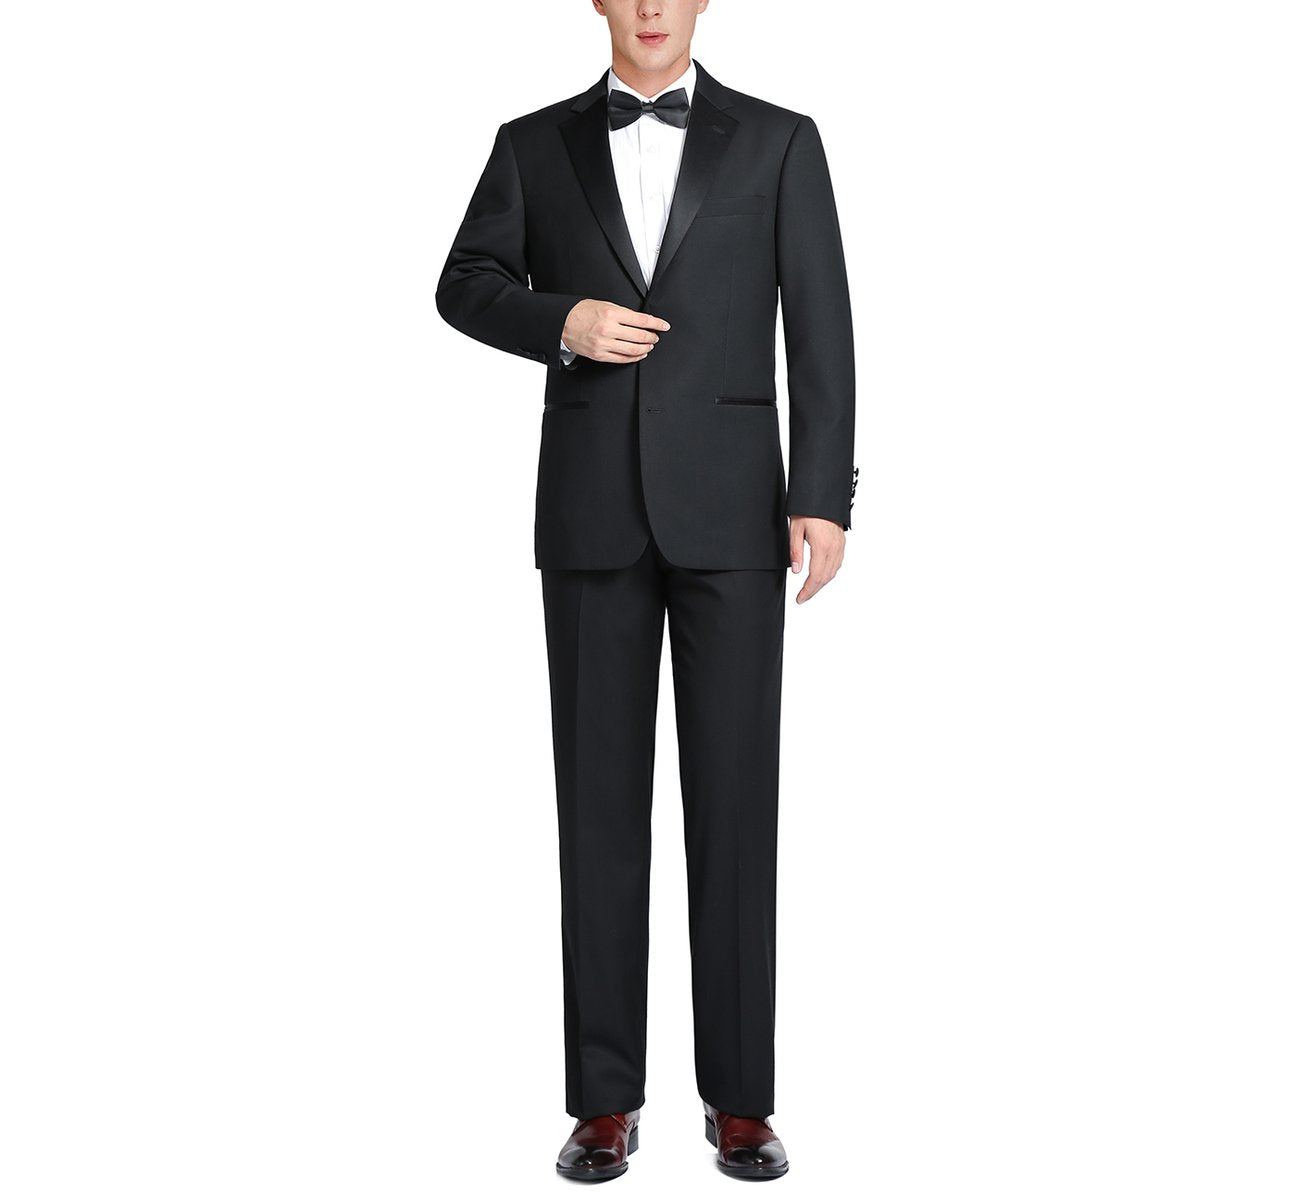 RENOIR Satin Slim Fit Notched Lapel 2-Piece 100% Wool Tuxedo Suit RI508-1